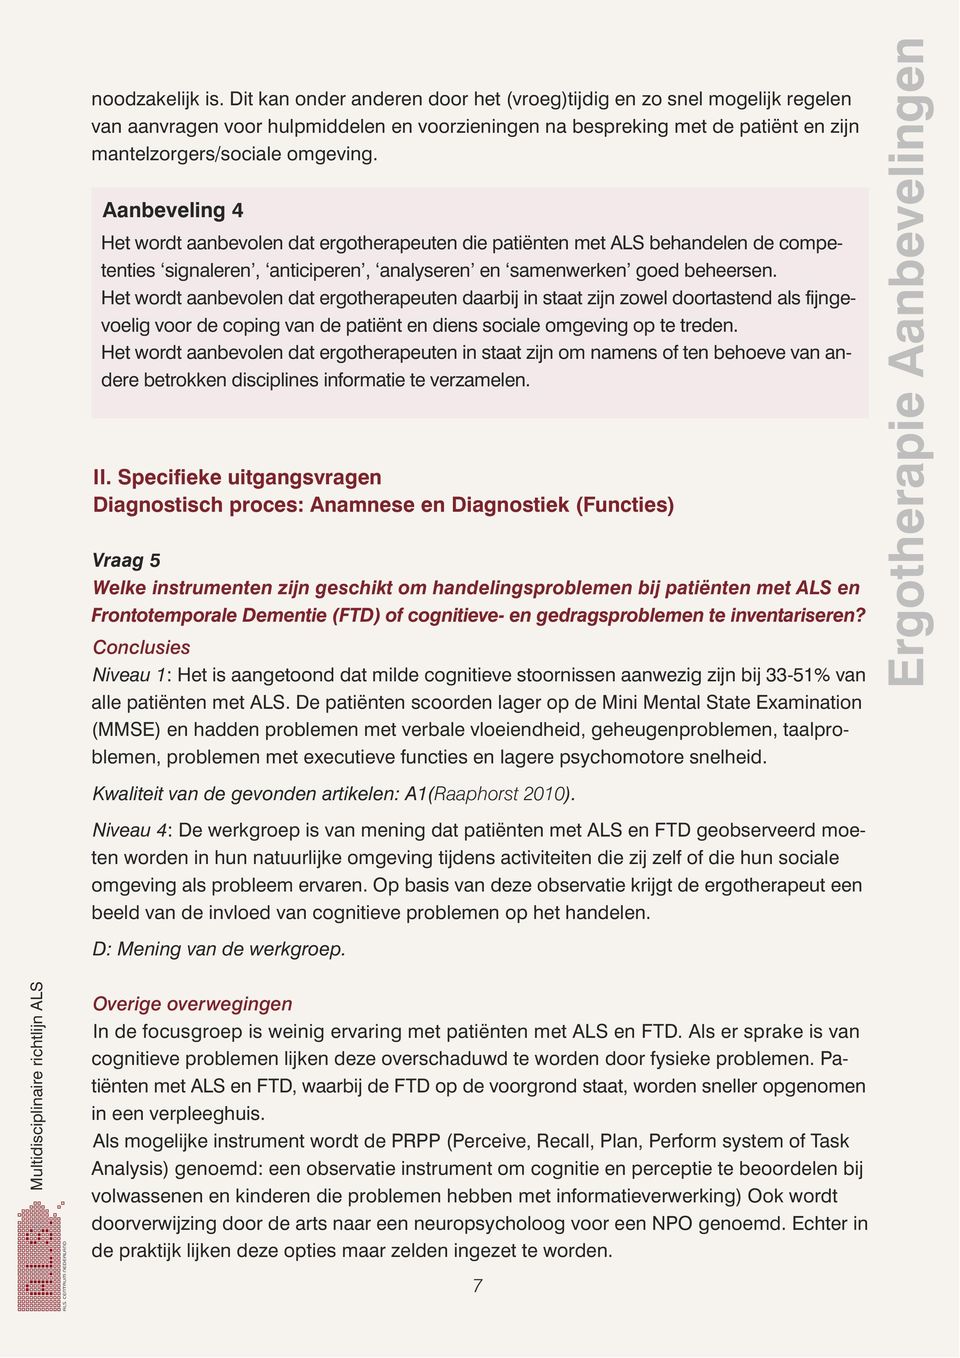 Aanbeveling 4 Het wordt aanbevolen dat ergotherapeuten die patiënten met ALS behandelen de competenties signaleren, anticiperen, analyseren en samenwerken goed beheersen.